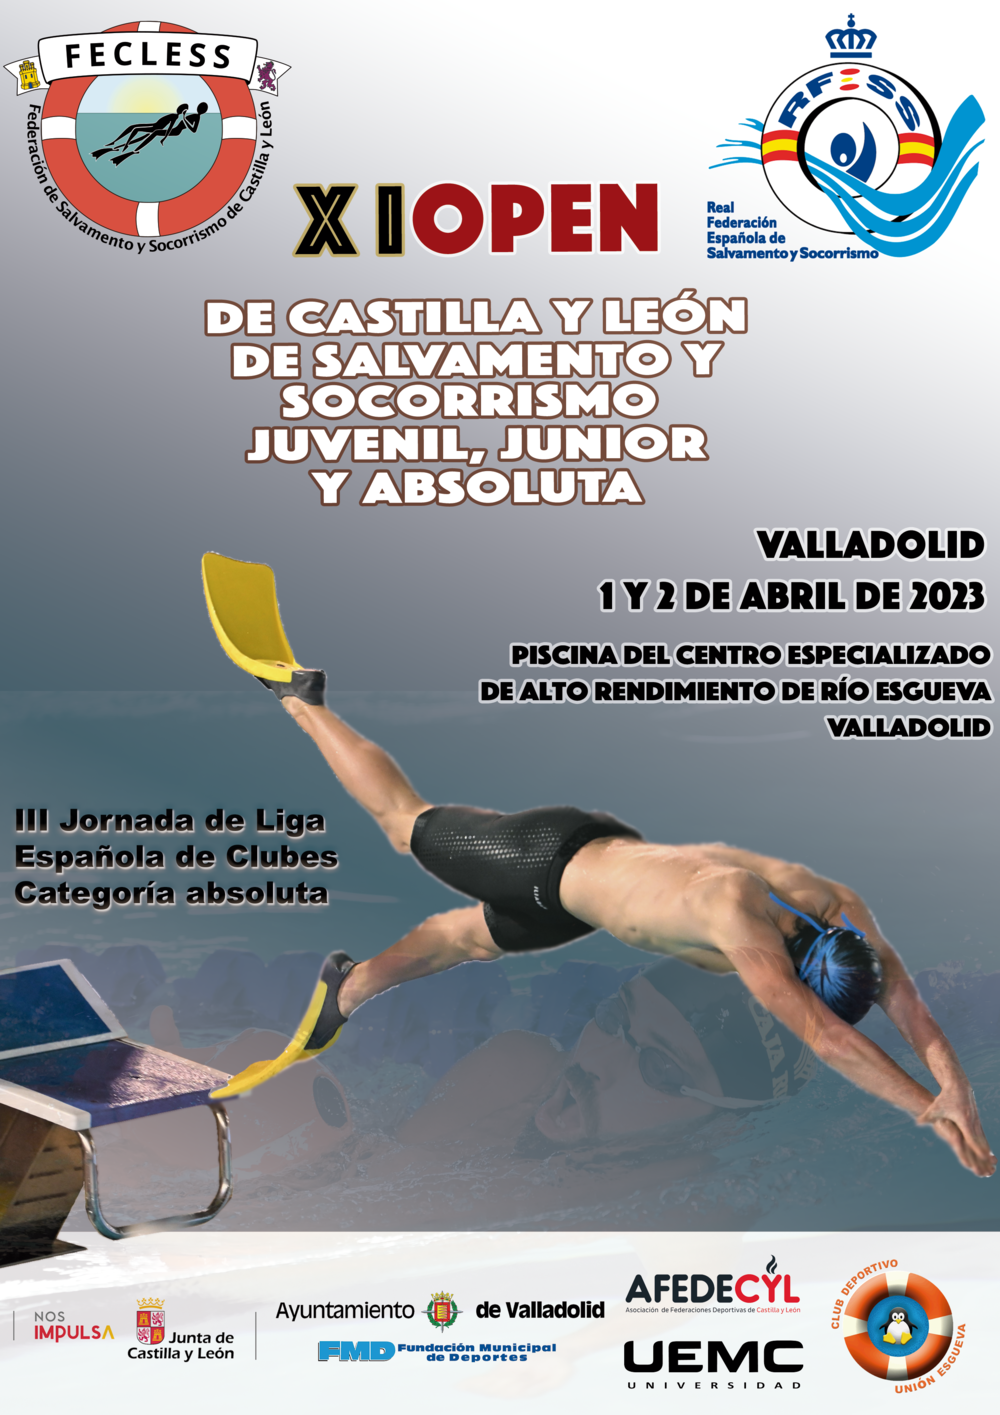 Cartel del XI Open de Salvamento y Socorrismo de Castilla y León en Valladolid.